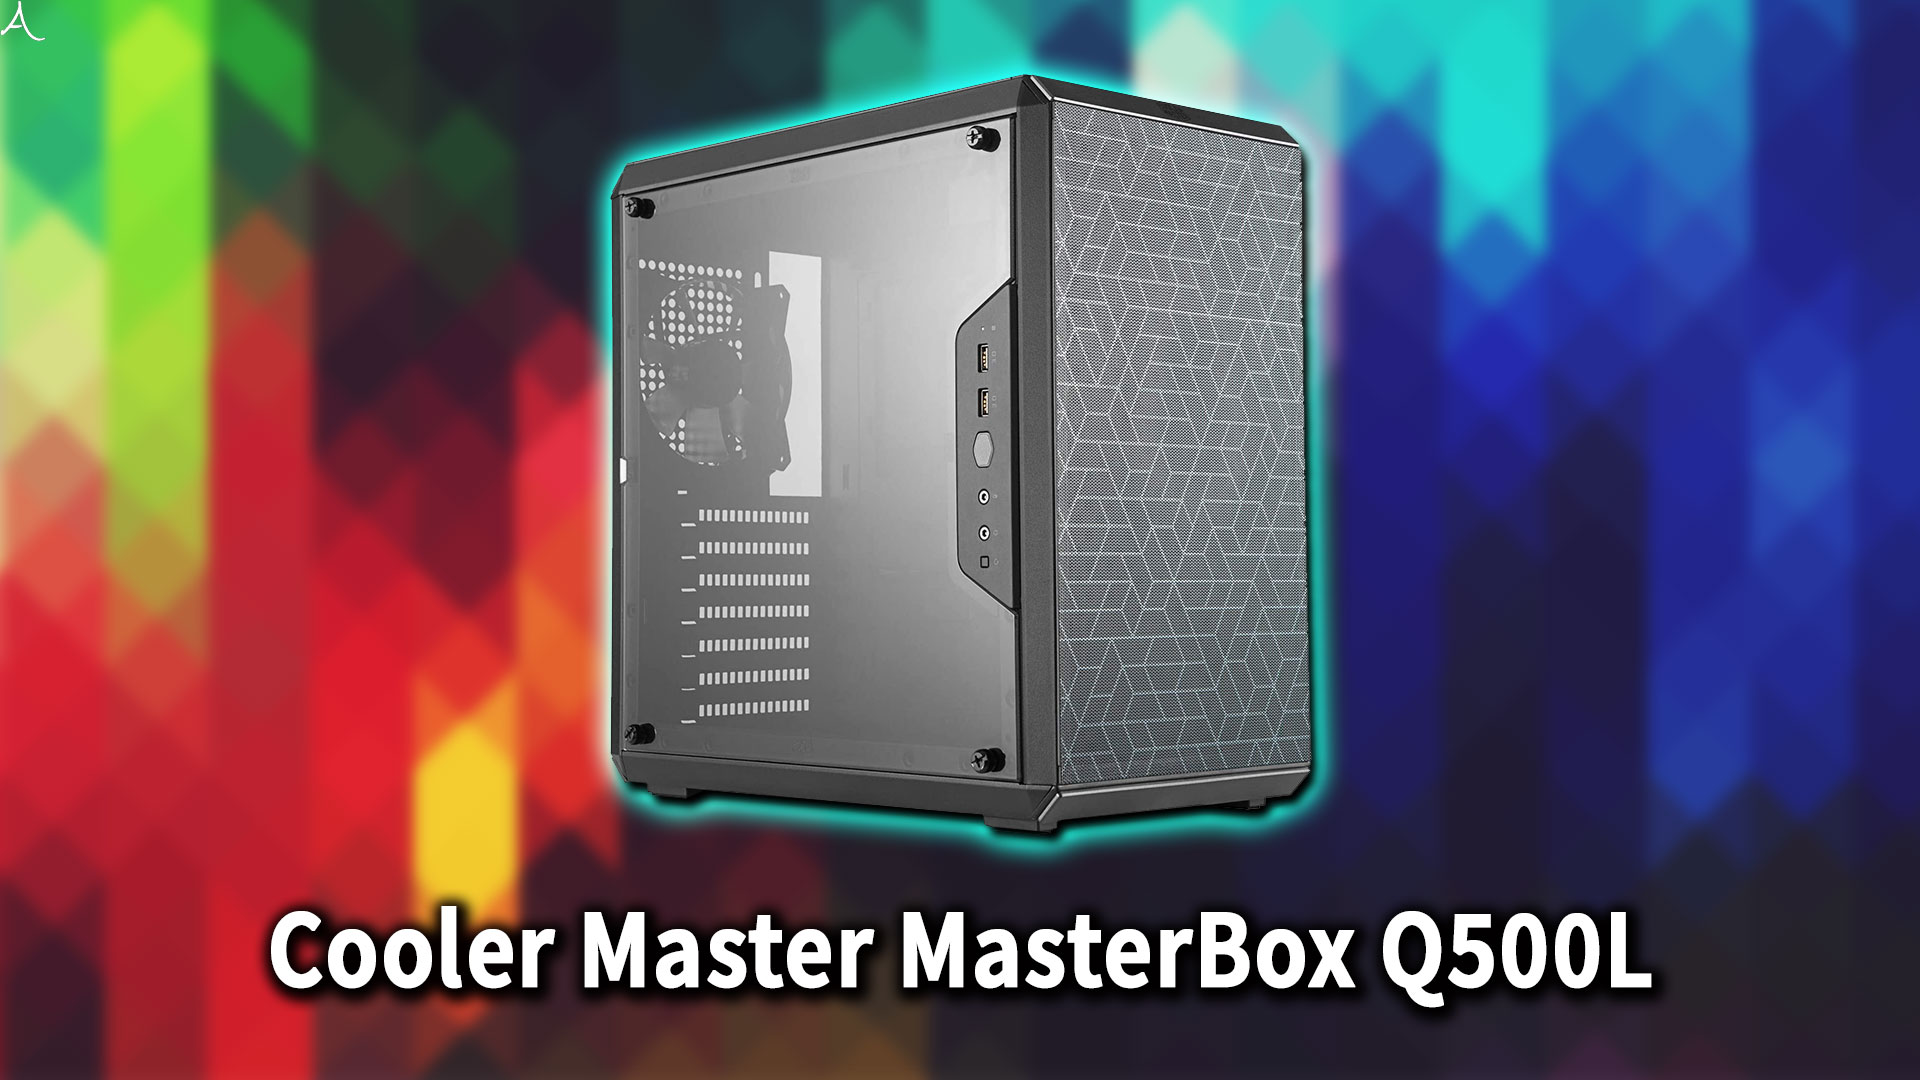 ｢Cooler Master MasterBox Q500L｣のサイズ・大きさはどれくらい？